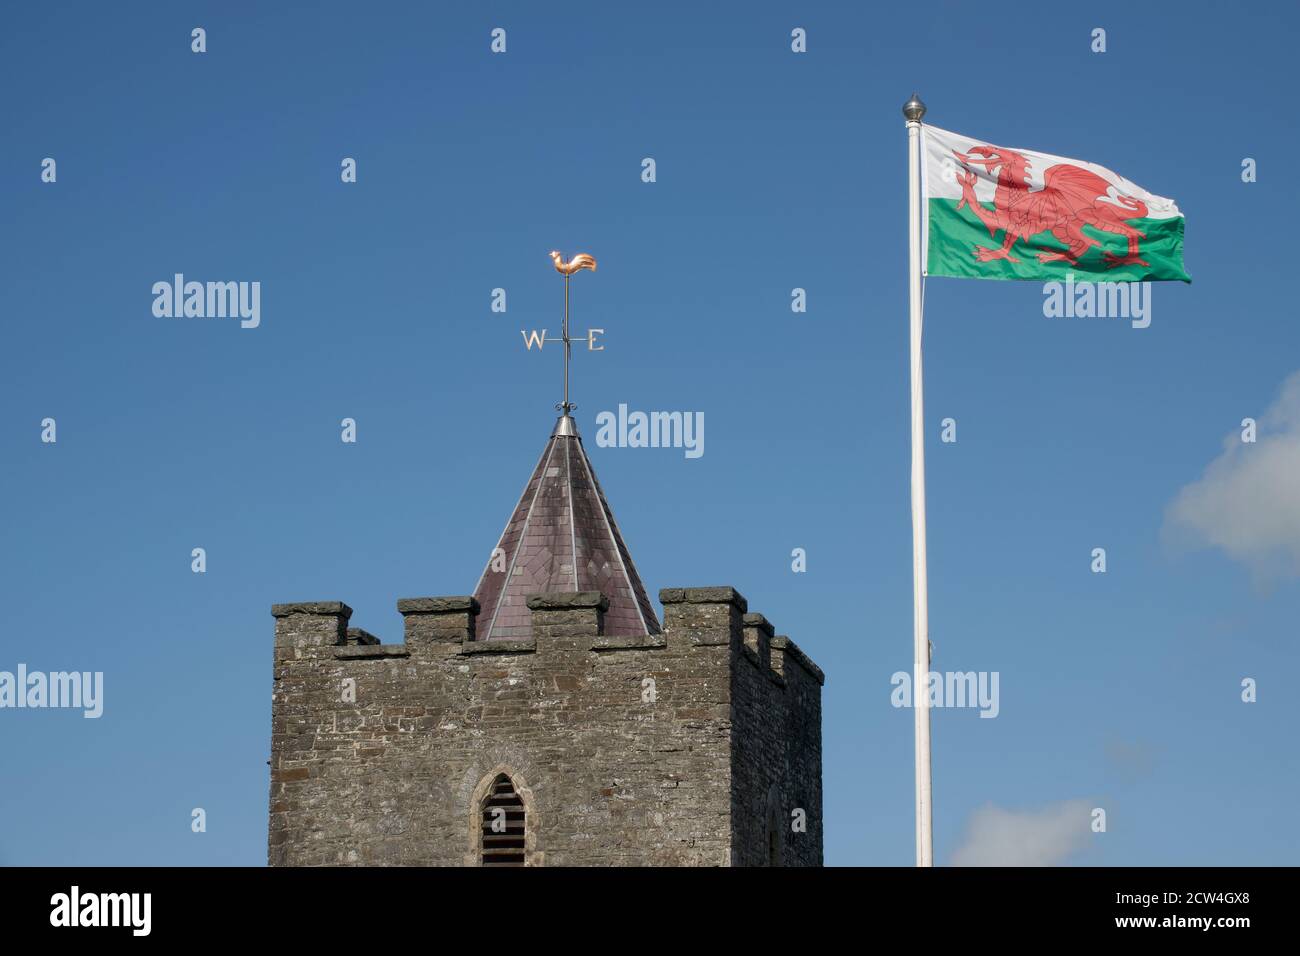 Le drapeau du dragon gallois survole fièrement l'église Saint-Hilays, Llanilar, Mid Wales Banque D'Images